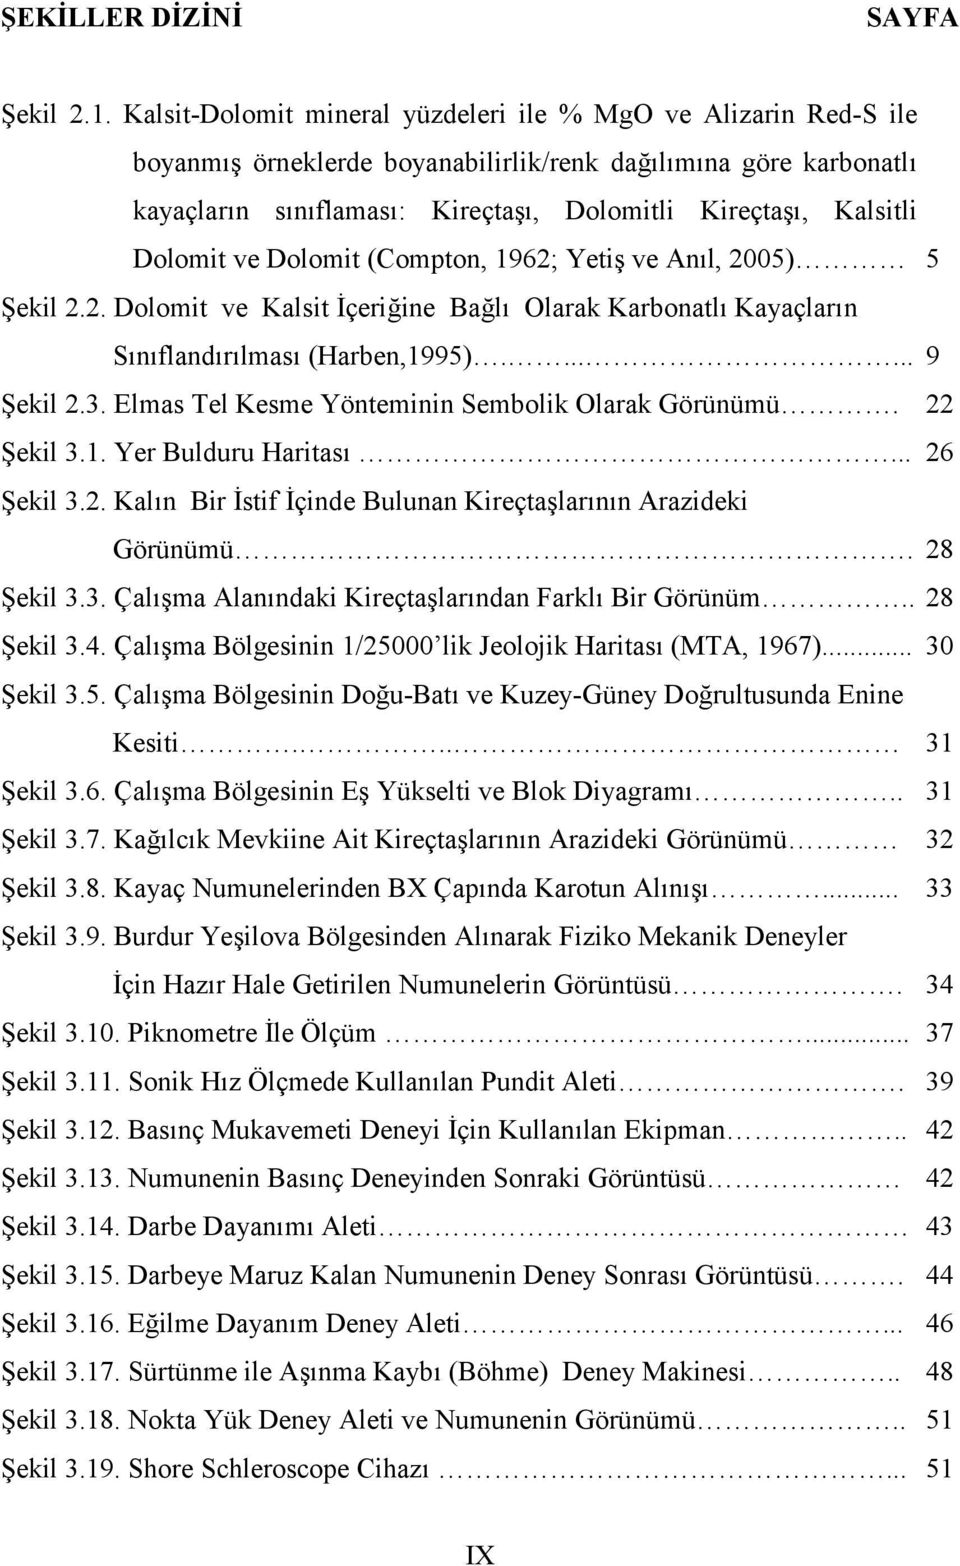 Dolomit ve Dolomit (Compton, 1962; Yetiş ve Anıl, 2005) 5 Şekil 2.2. Dolomit ve Kalsit İçeriğine Bağlı Olarak Karbonatlı Kayaçların Sınıflandırılması (Harben,1995)....... 9 Şekil 2.3.